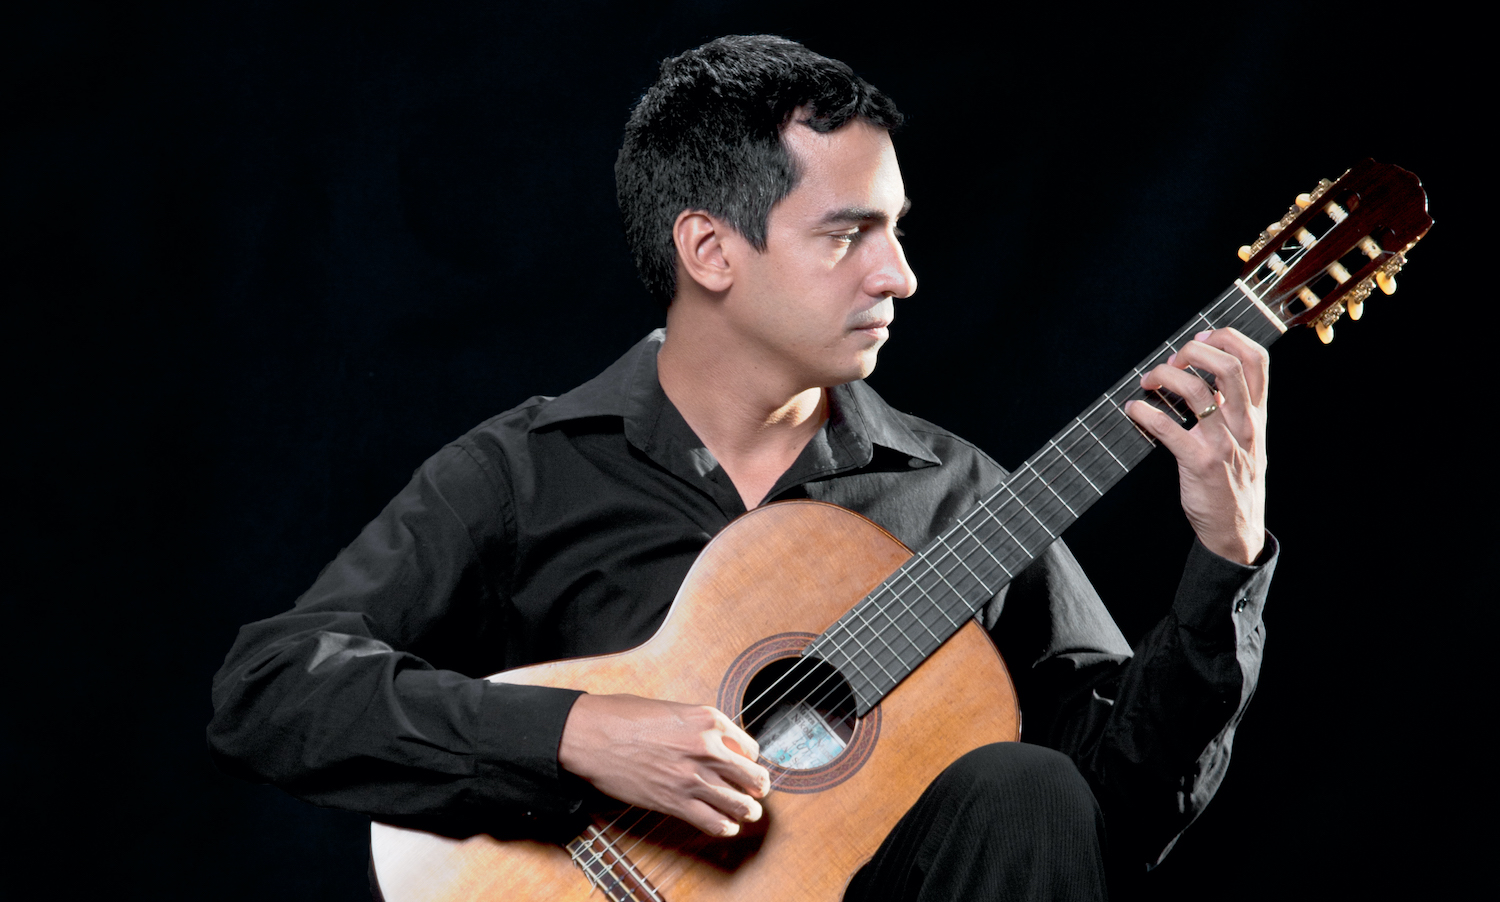 Lives de violão: Maurício Gomes e Thiago Abdalla se apresentam nesta segunda (01/06) - Maurício Gomes